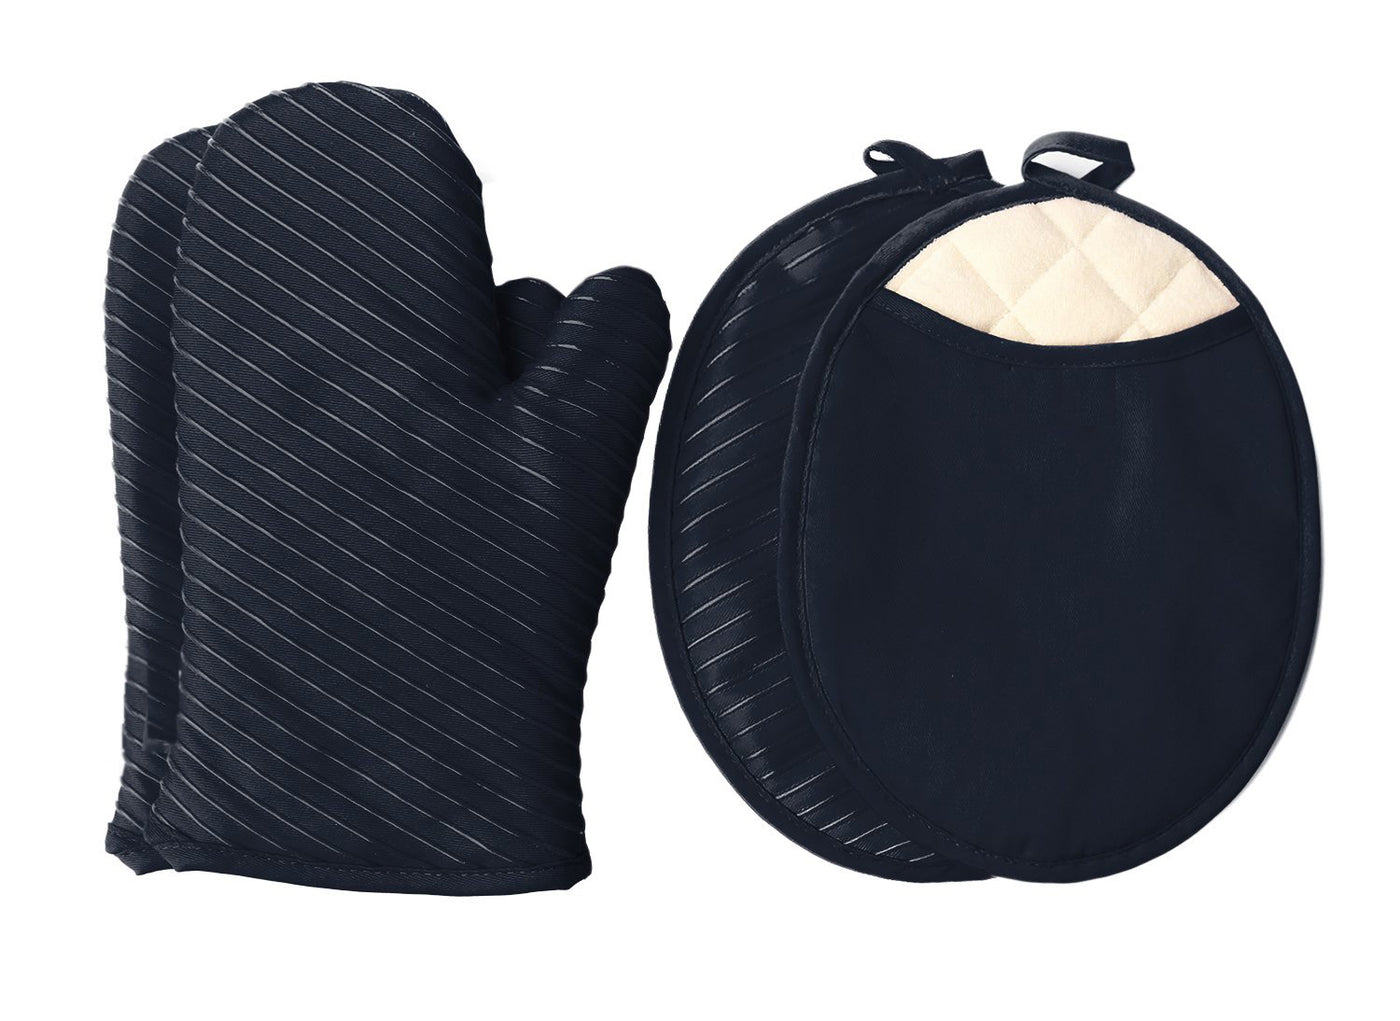 Maniques et gants de four, 2 maniques et 2 coussins chauffants, ensemble de linge de cuisine – Noir